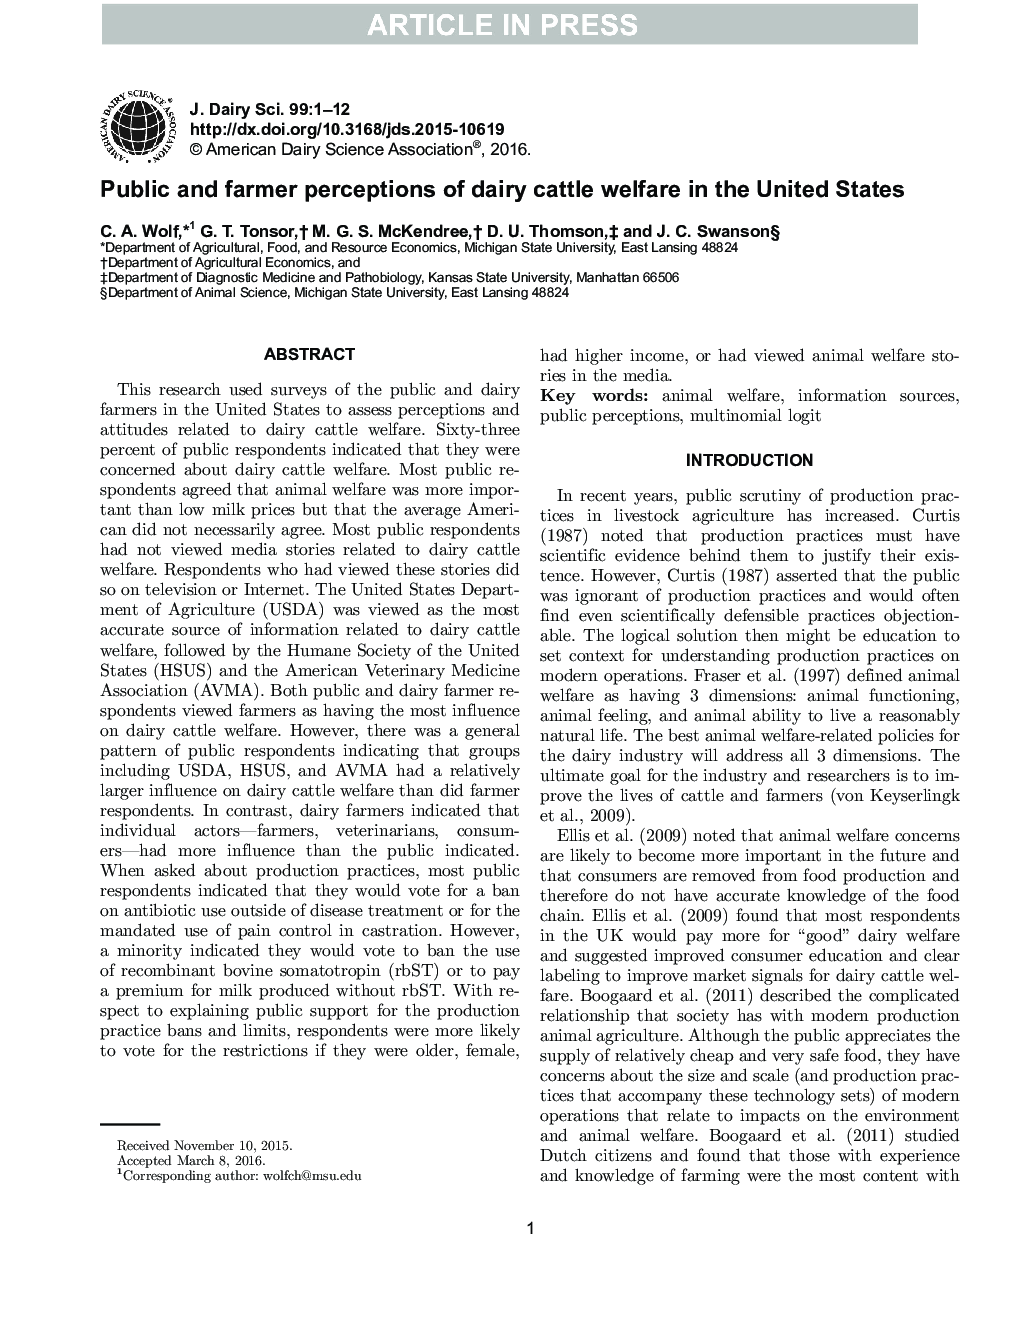 ادراک عمومی و کشاورزان از رفاه گاوهای شیری در ایالات متحده 